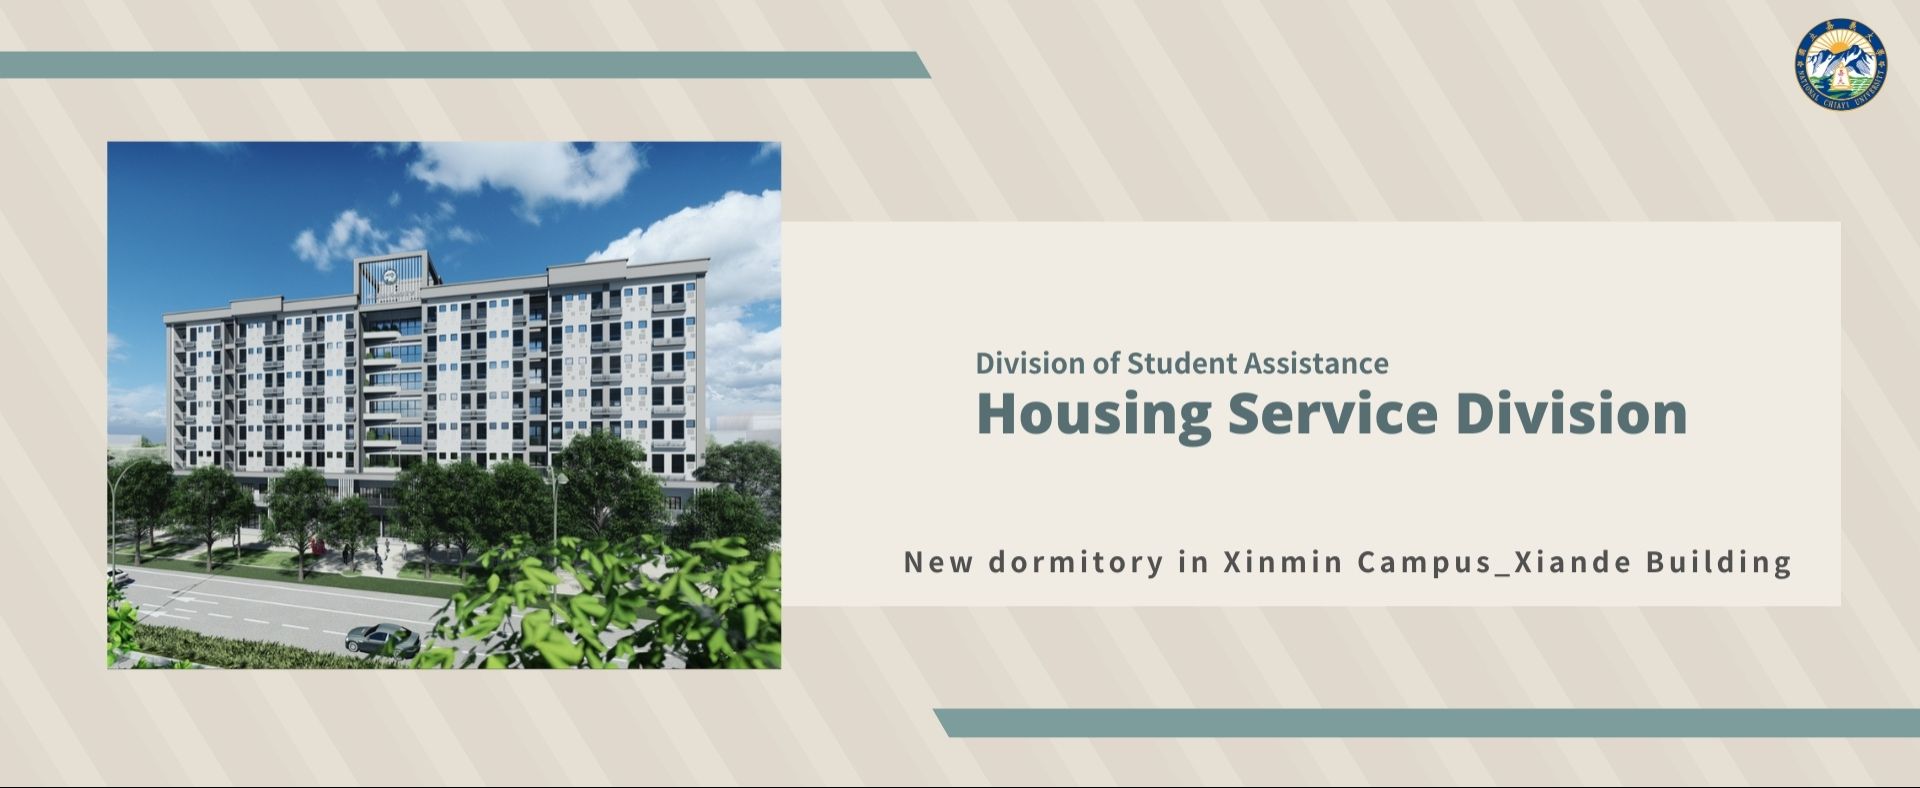 New dormitory in Xinmin Campus_Xiande Building